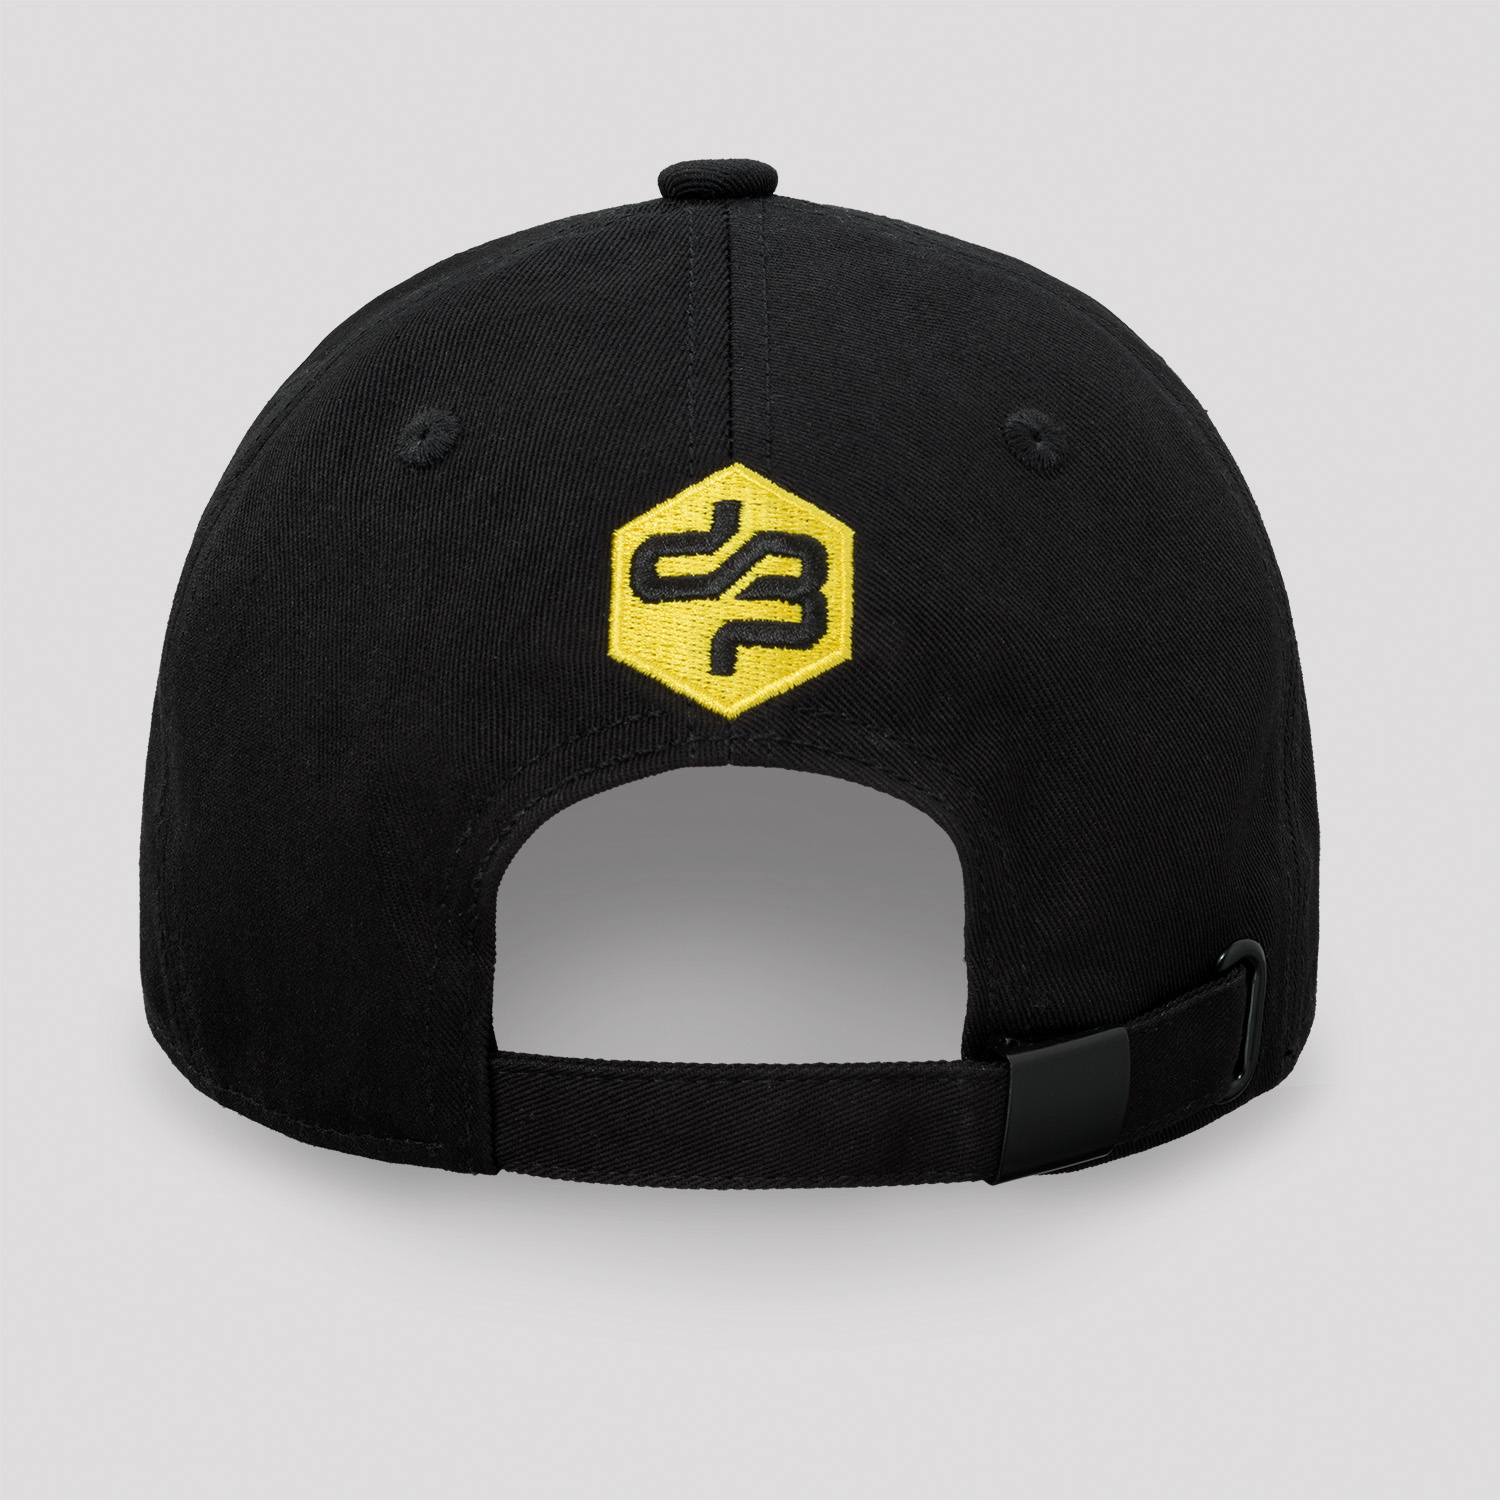 Decibel baseball cap black/yellow